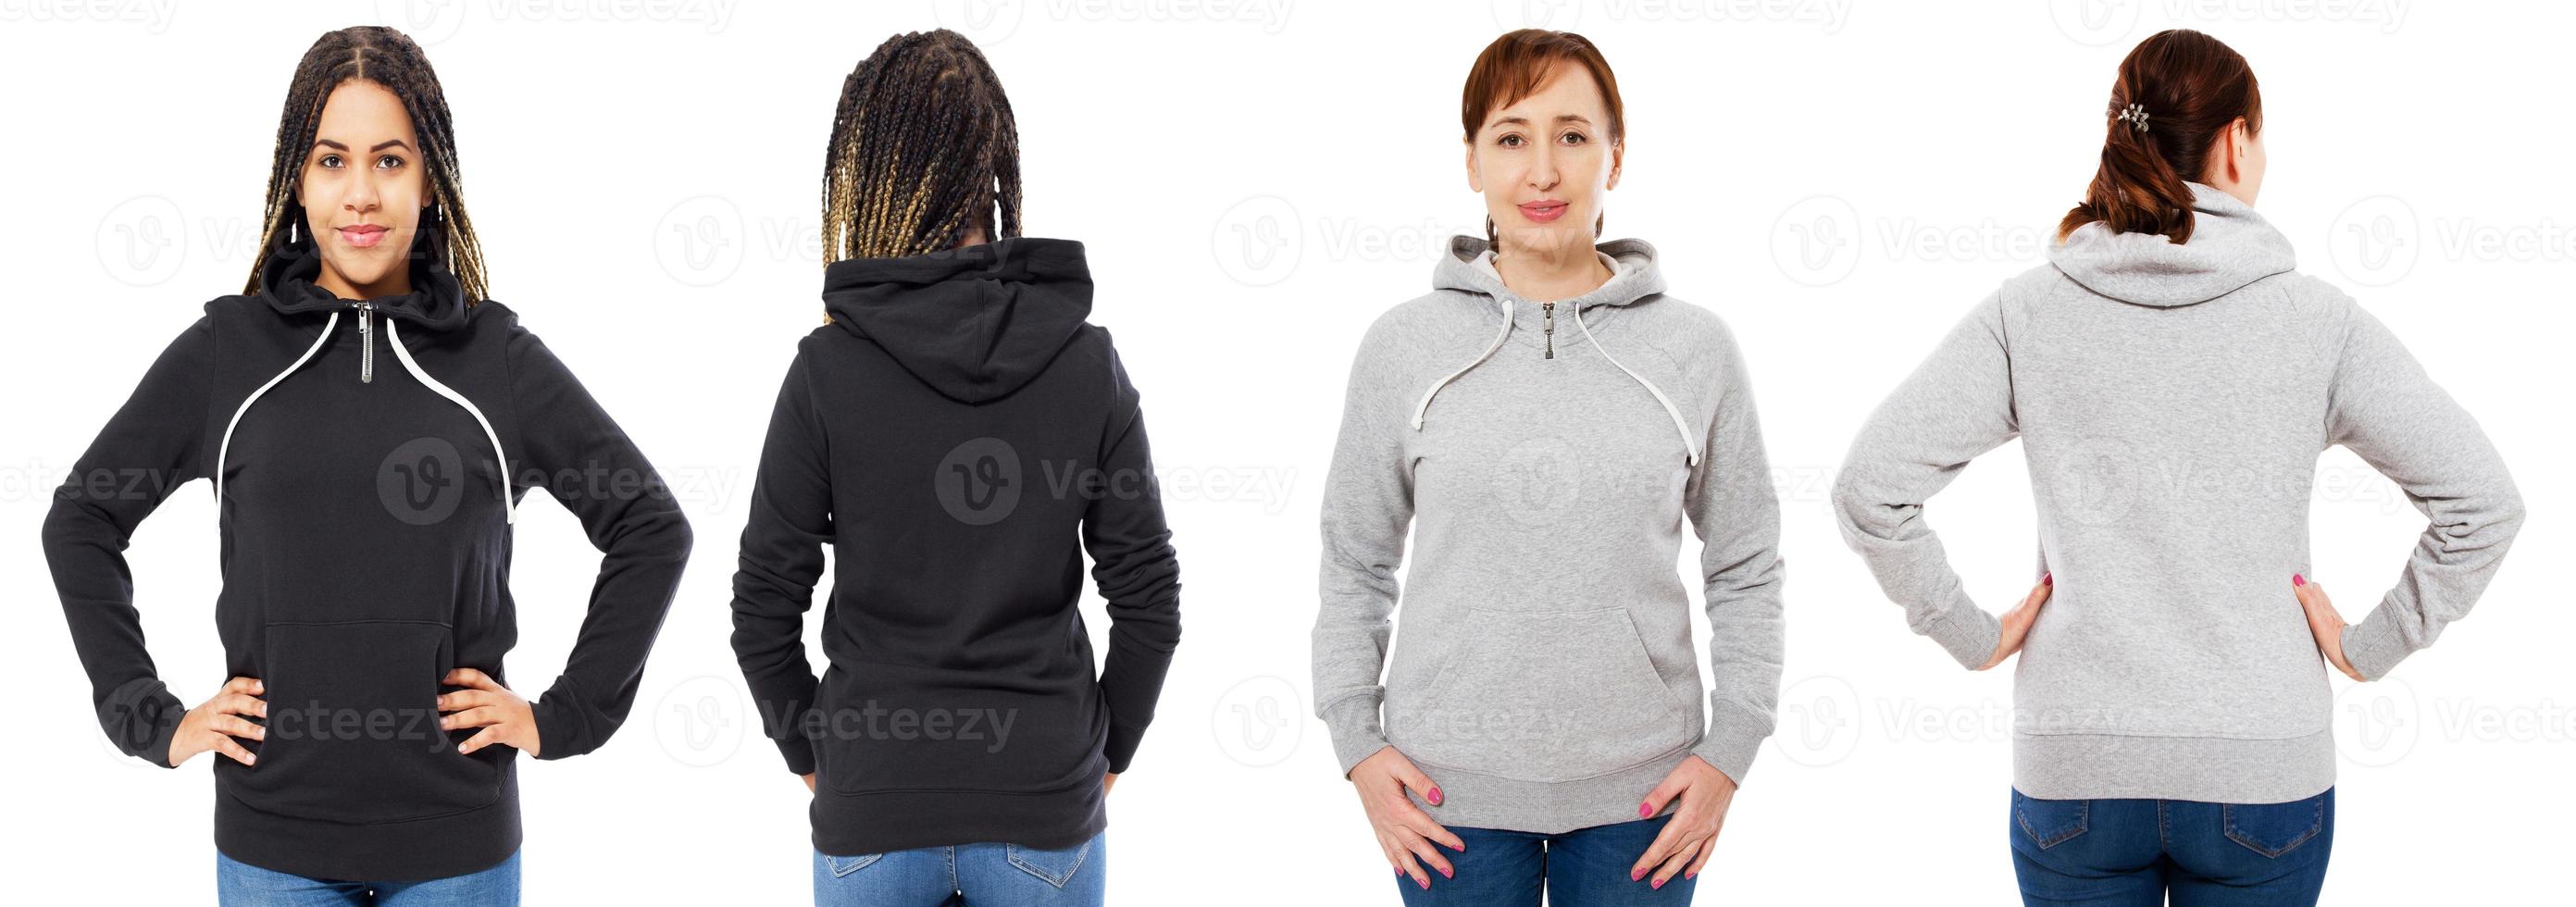 cappuccio femminile collage vista anteriore e posteriore isolata - donna caucasica e nera in felpa con cappuccio mock up foto